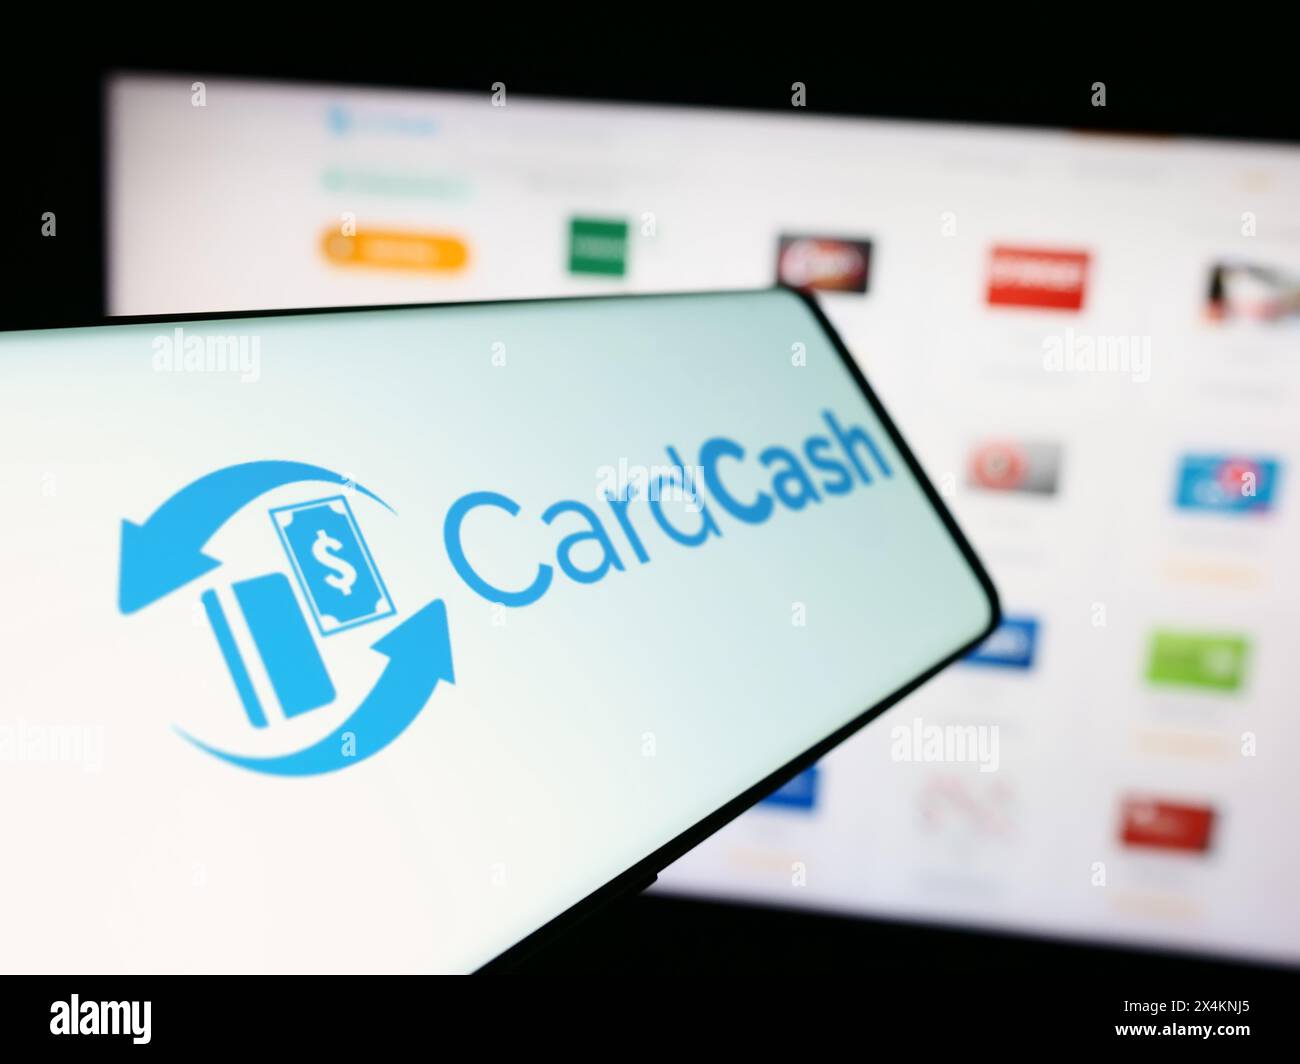 Telefono cellulare con il logo della società americana CardCash che si occupa del mercato delle carte regalo davanti al sito Web aziendale. Mettere a fuoco la parte sinistra del display del telefono. Foto Stock